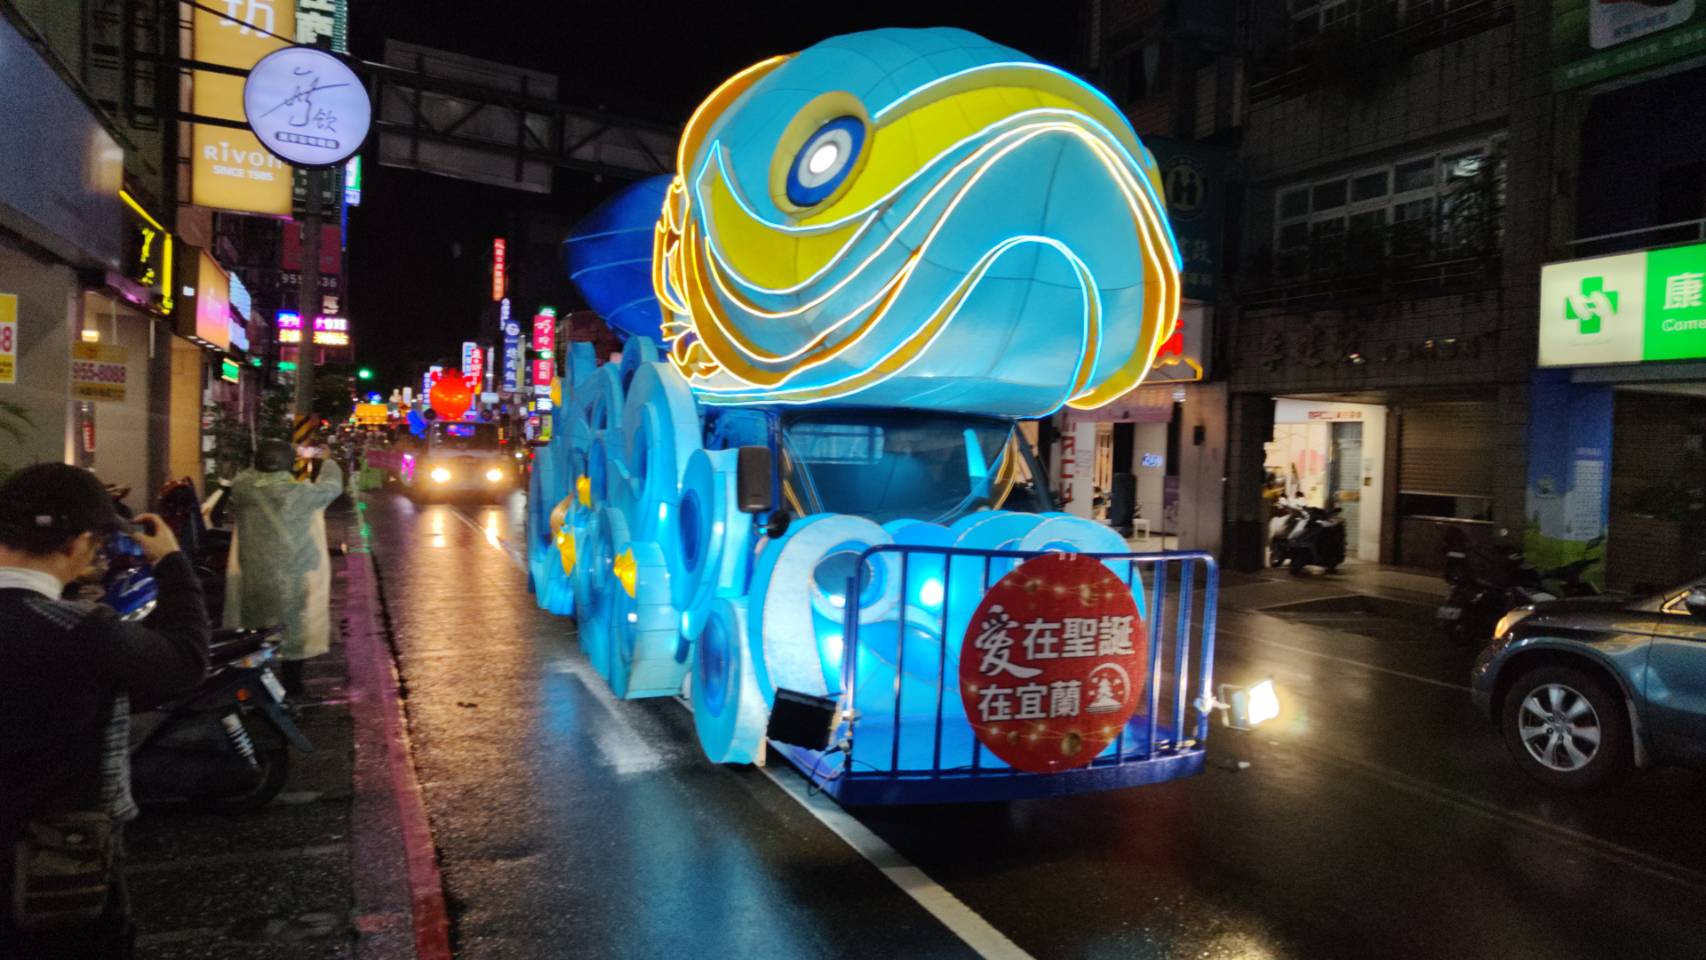 「愛在聖誕‧愛在羅東」 燈車遊行亮麗登場 - 早安台灣新聞 | Morning Taiwan News